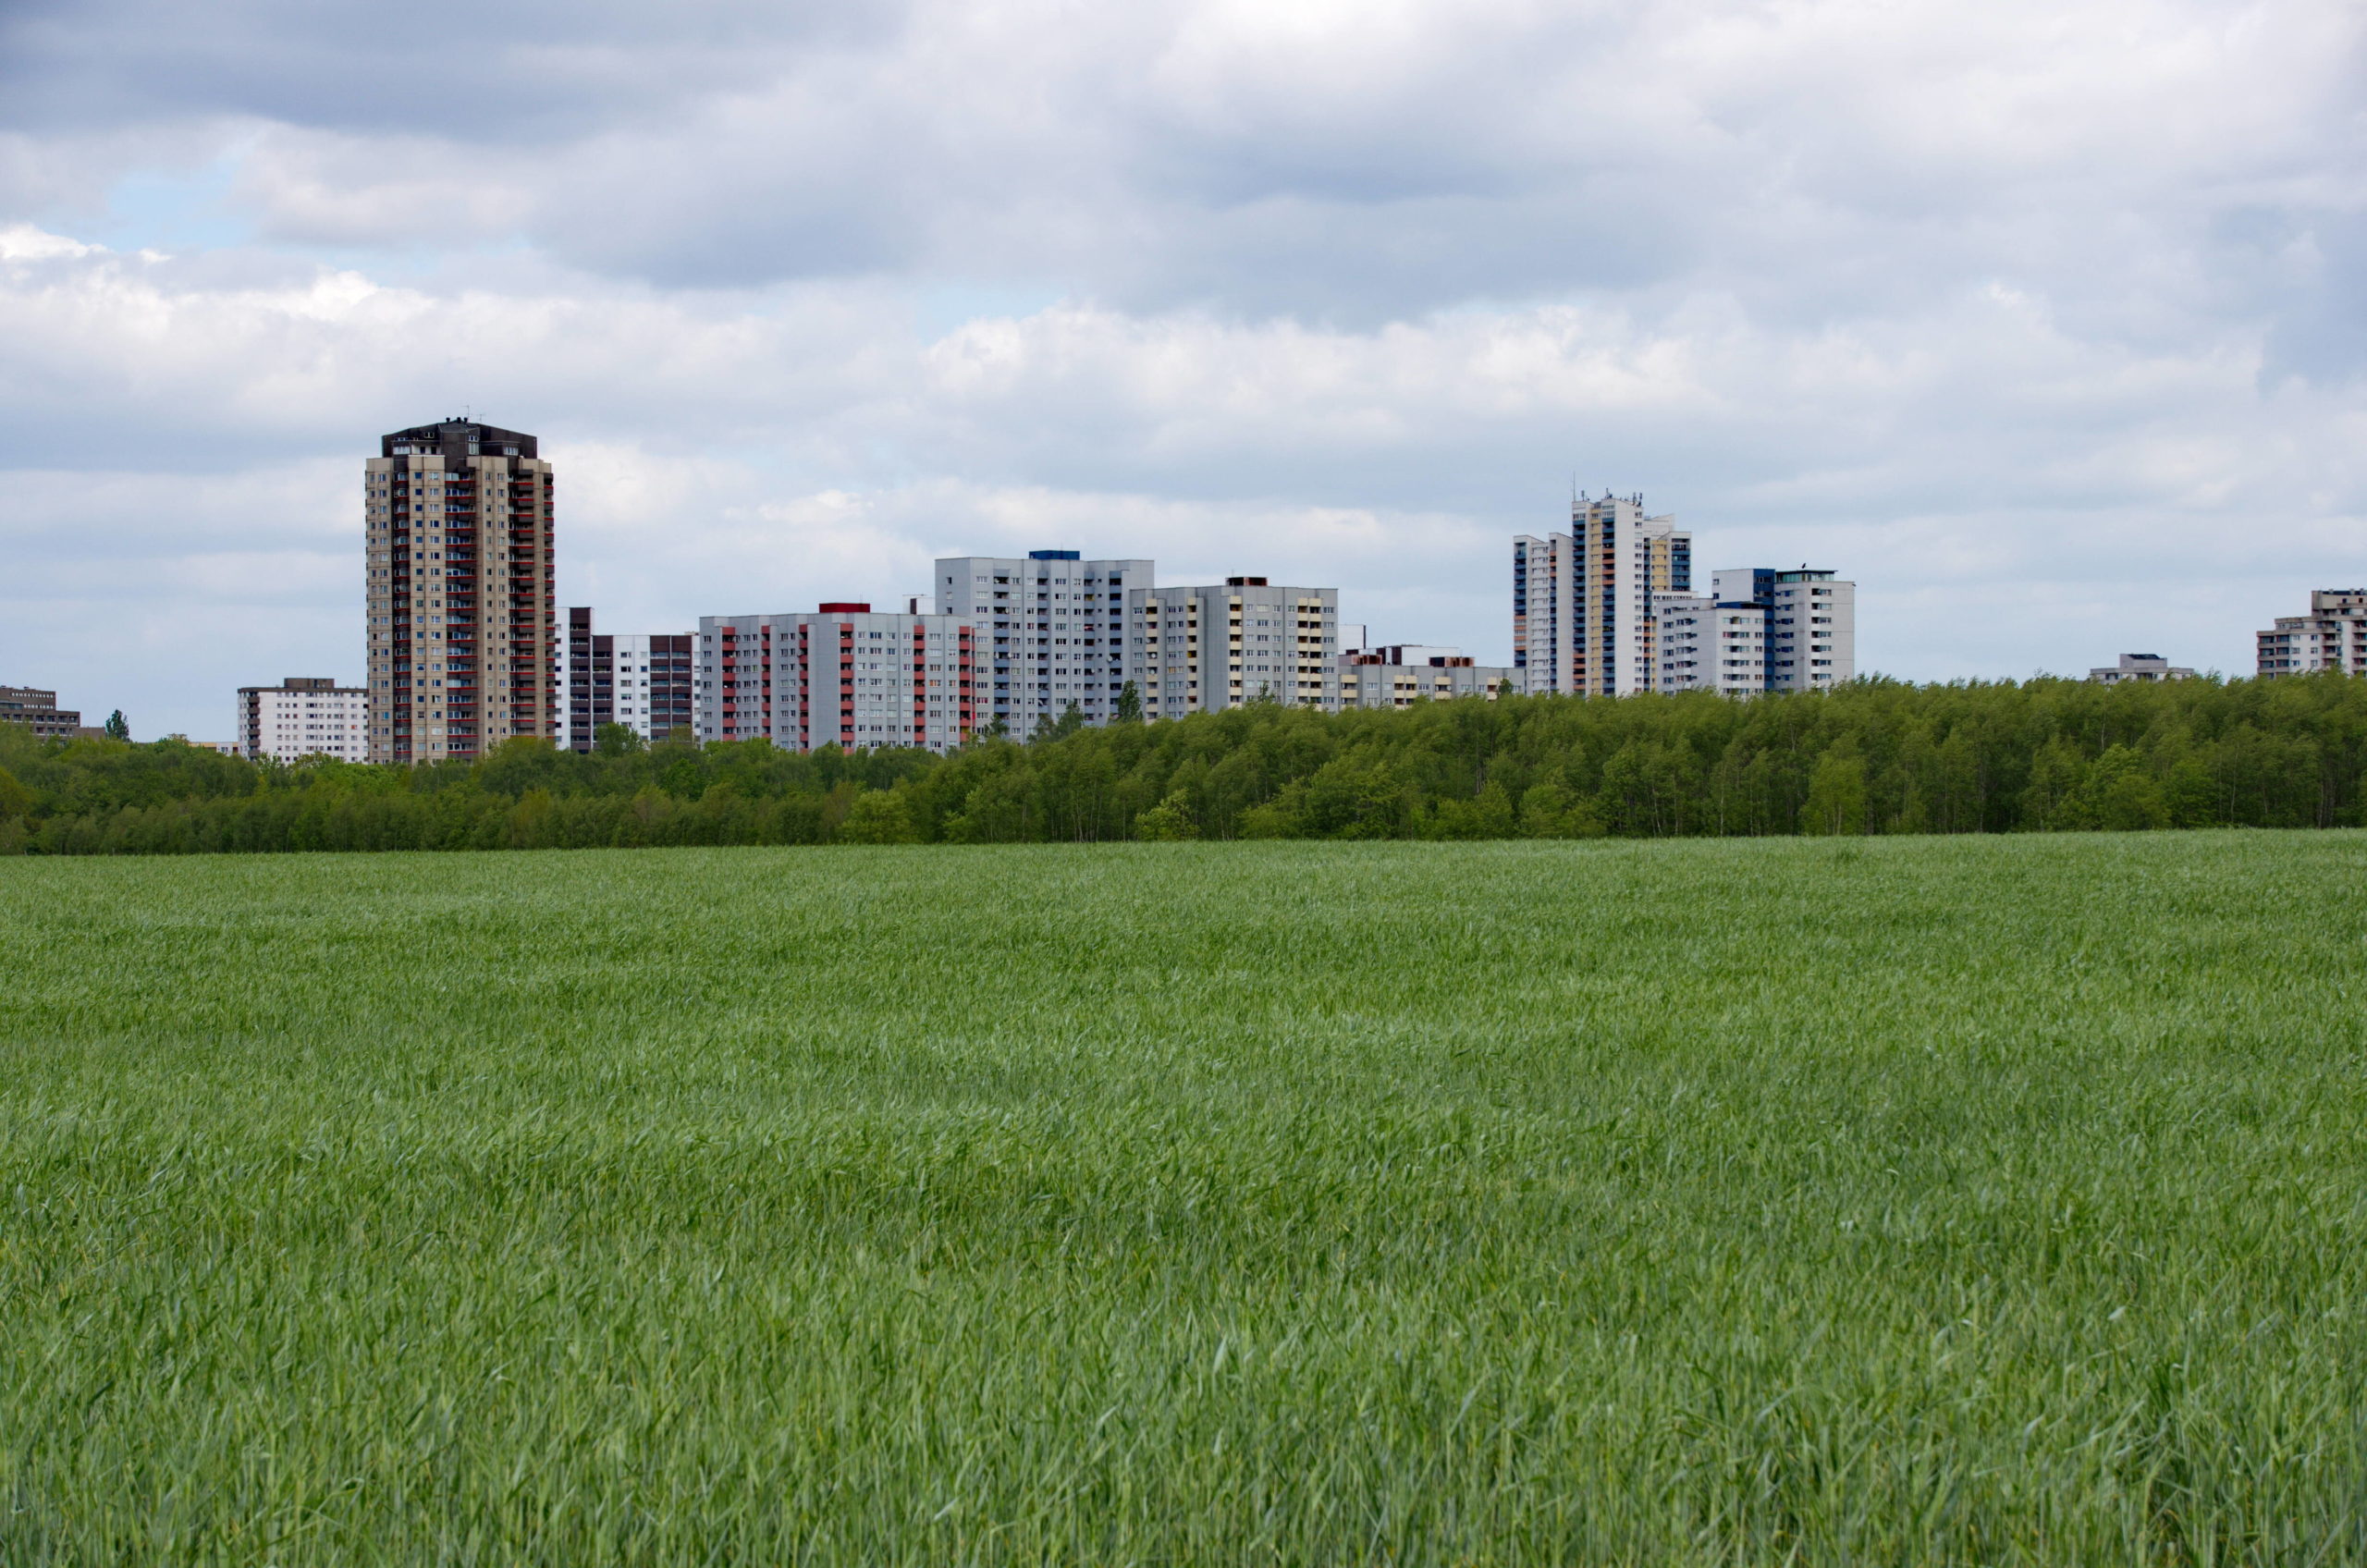 Die Wohnsiedlung Gropiusstadt von der grünen Wiese aus gesehen. Foto: Imago/Shotshop